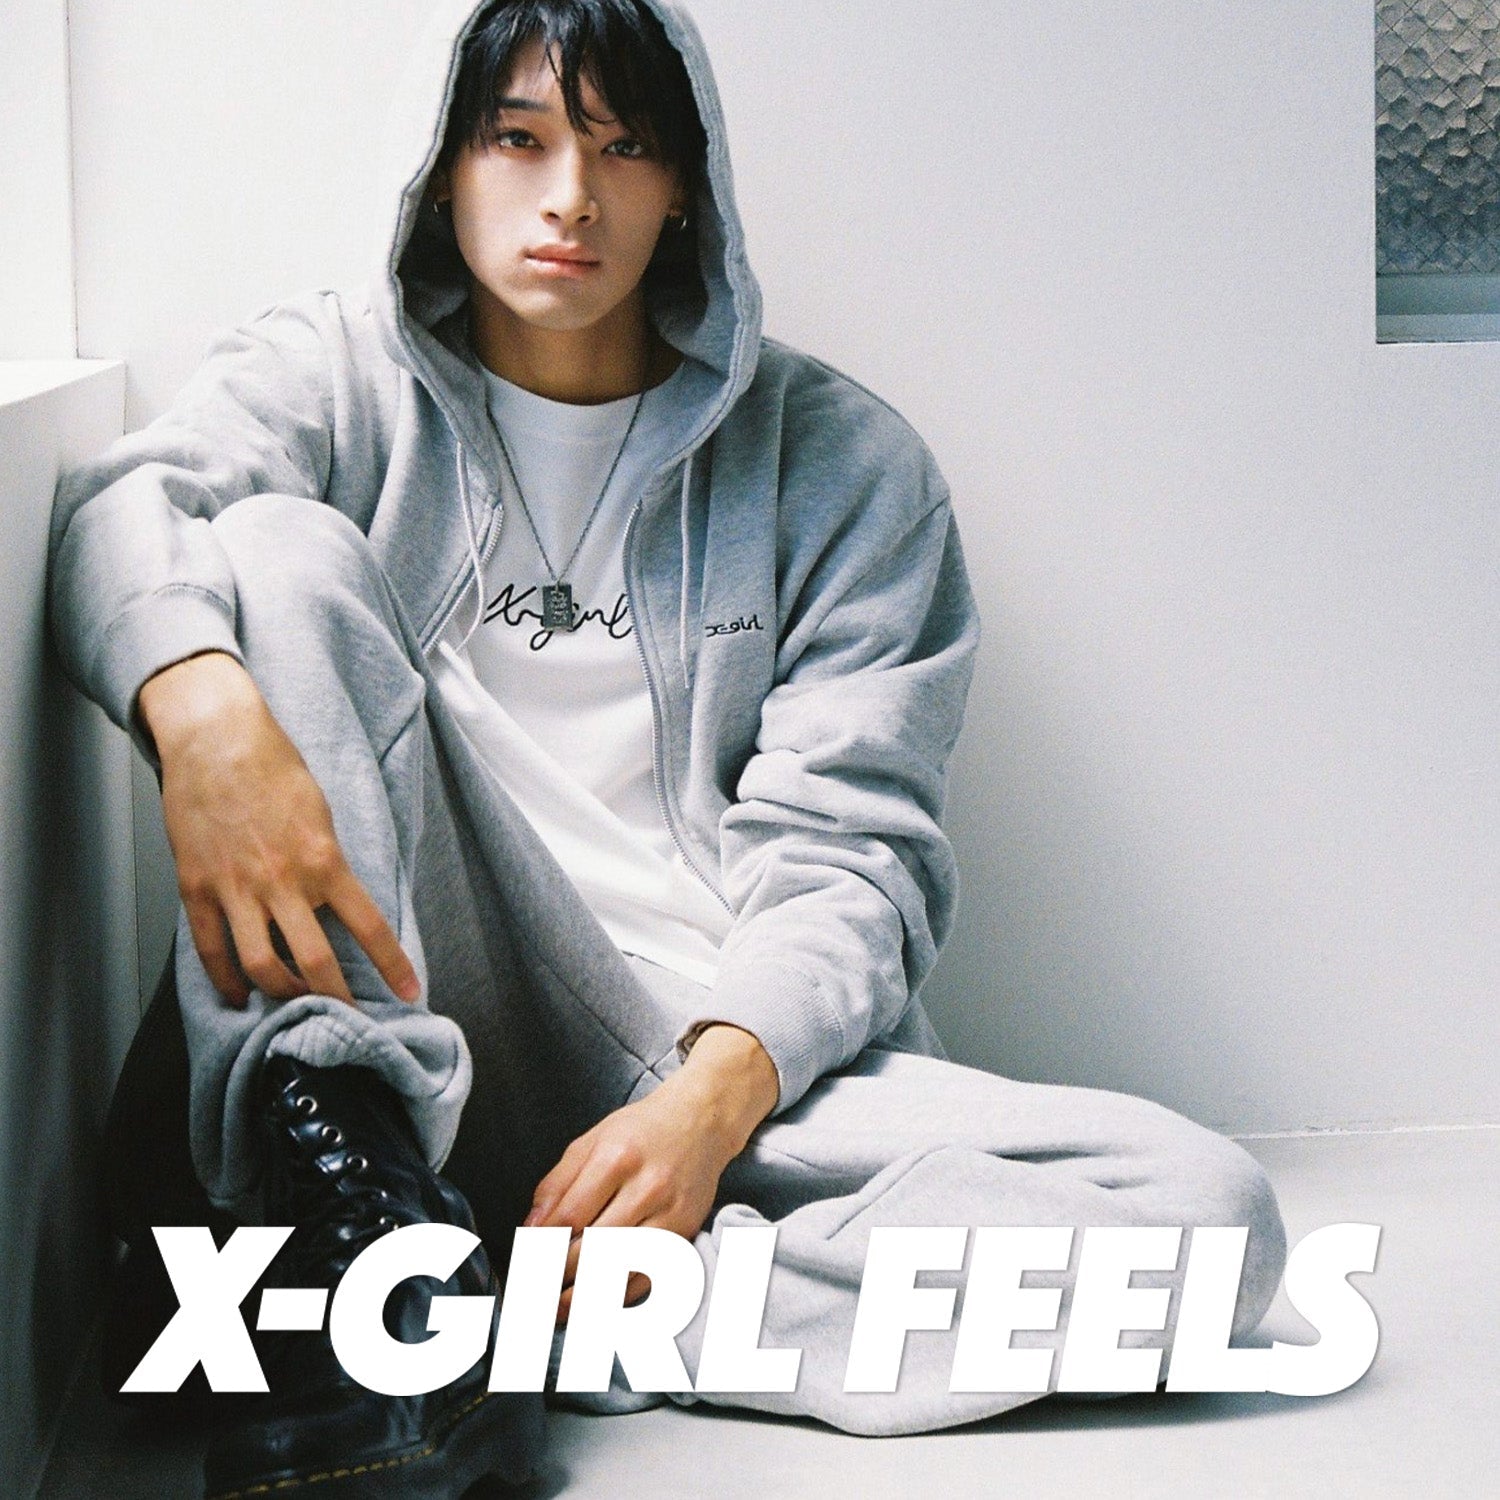 X-girl feels vol.11